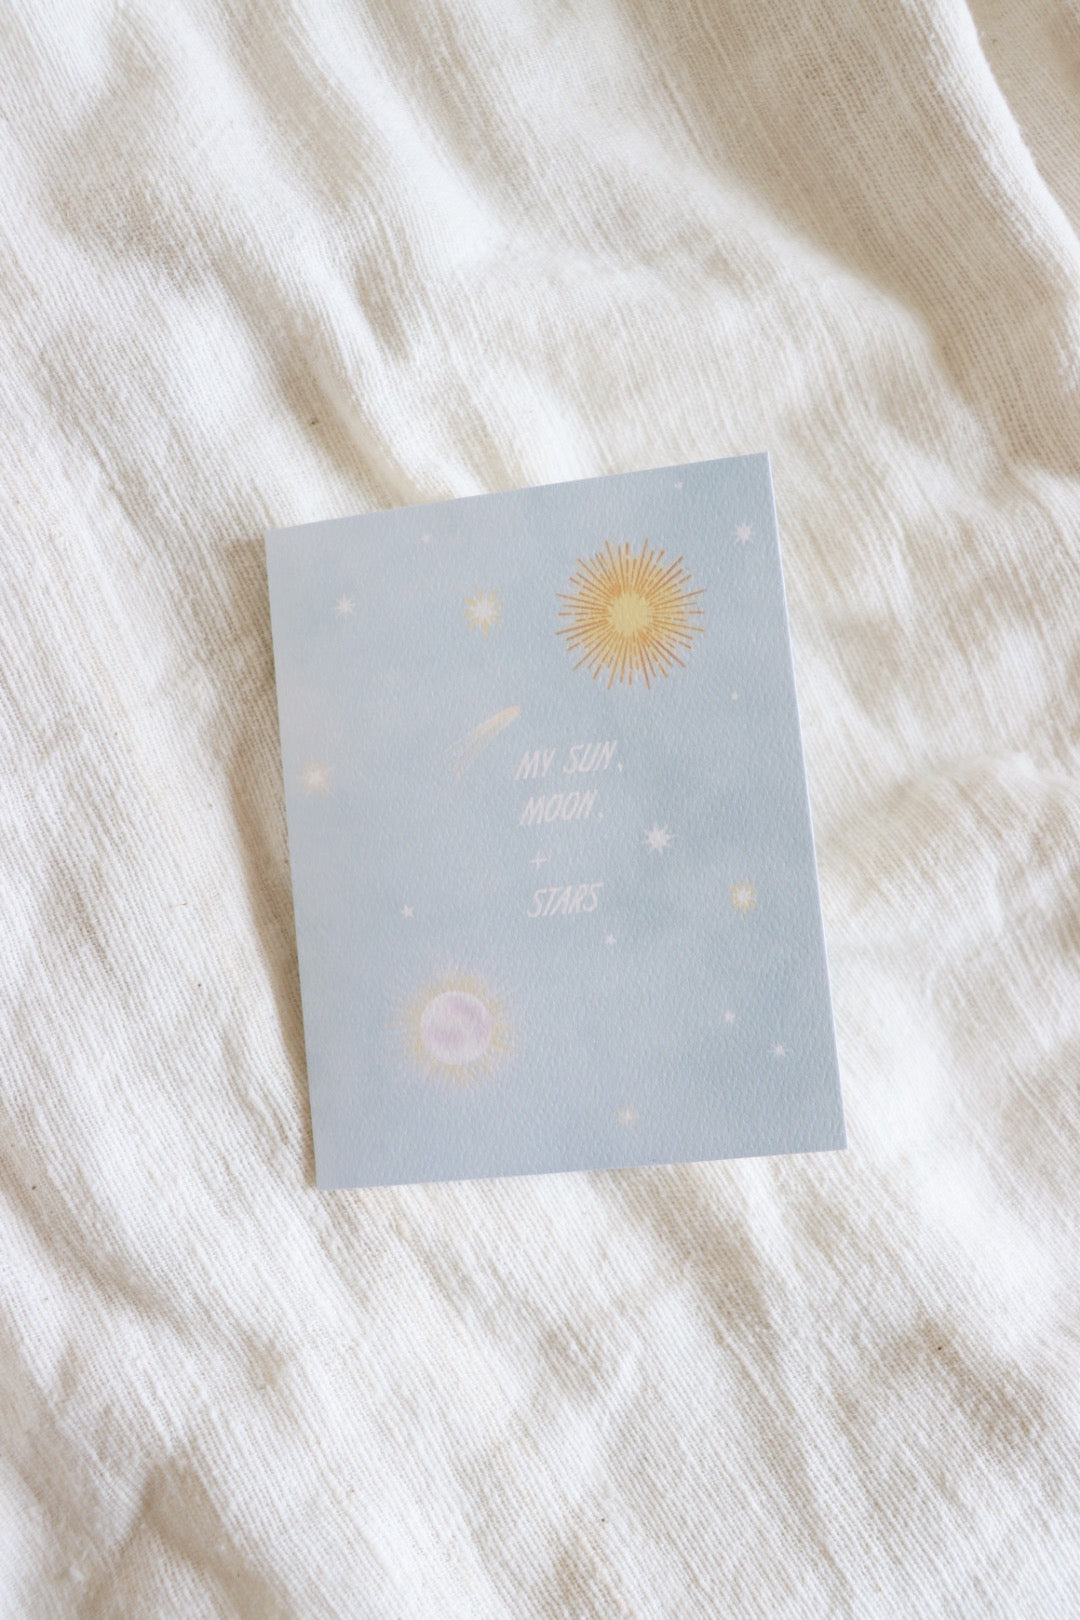 My Sun, Moon, + Stars Card